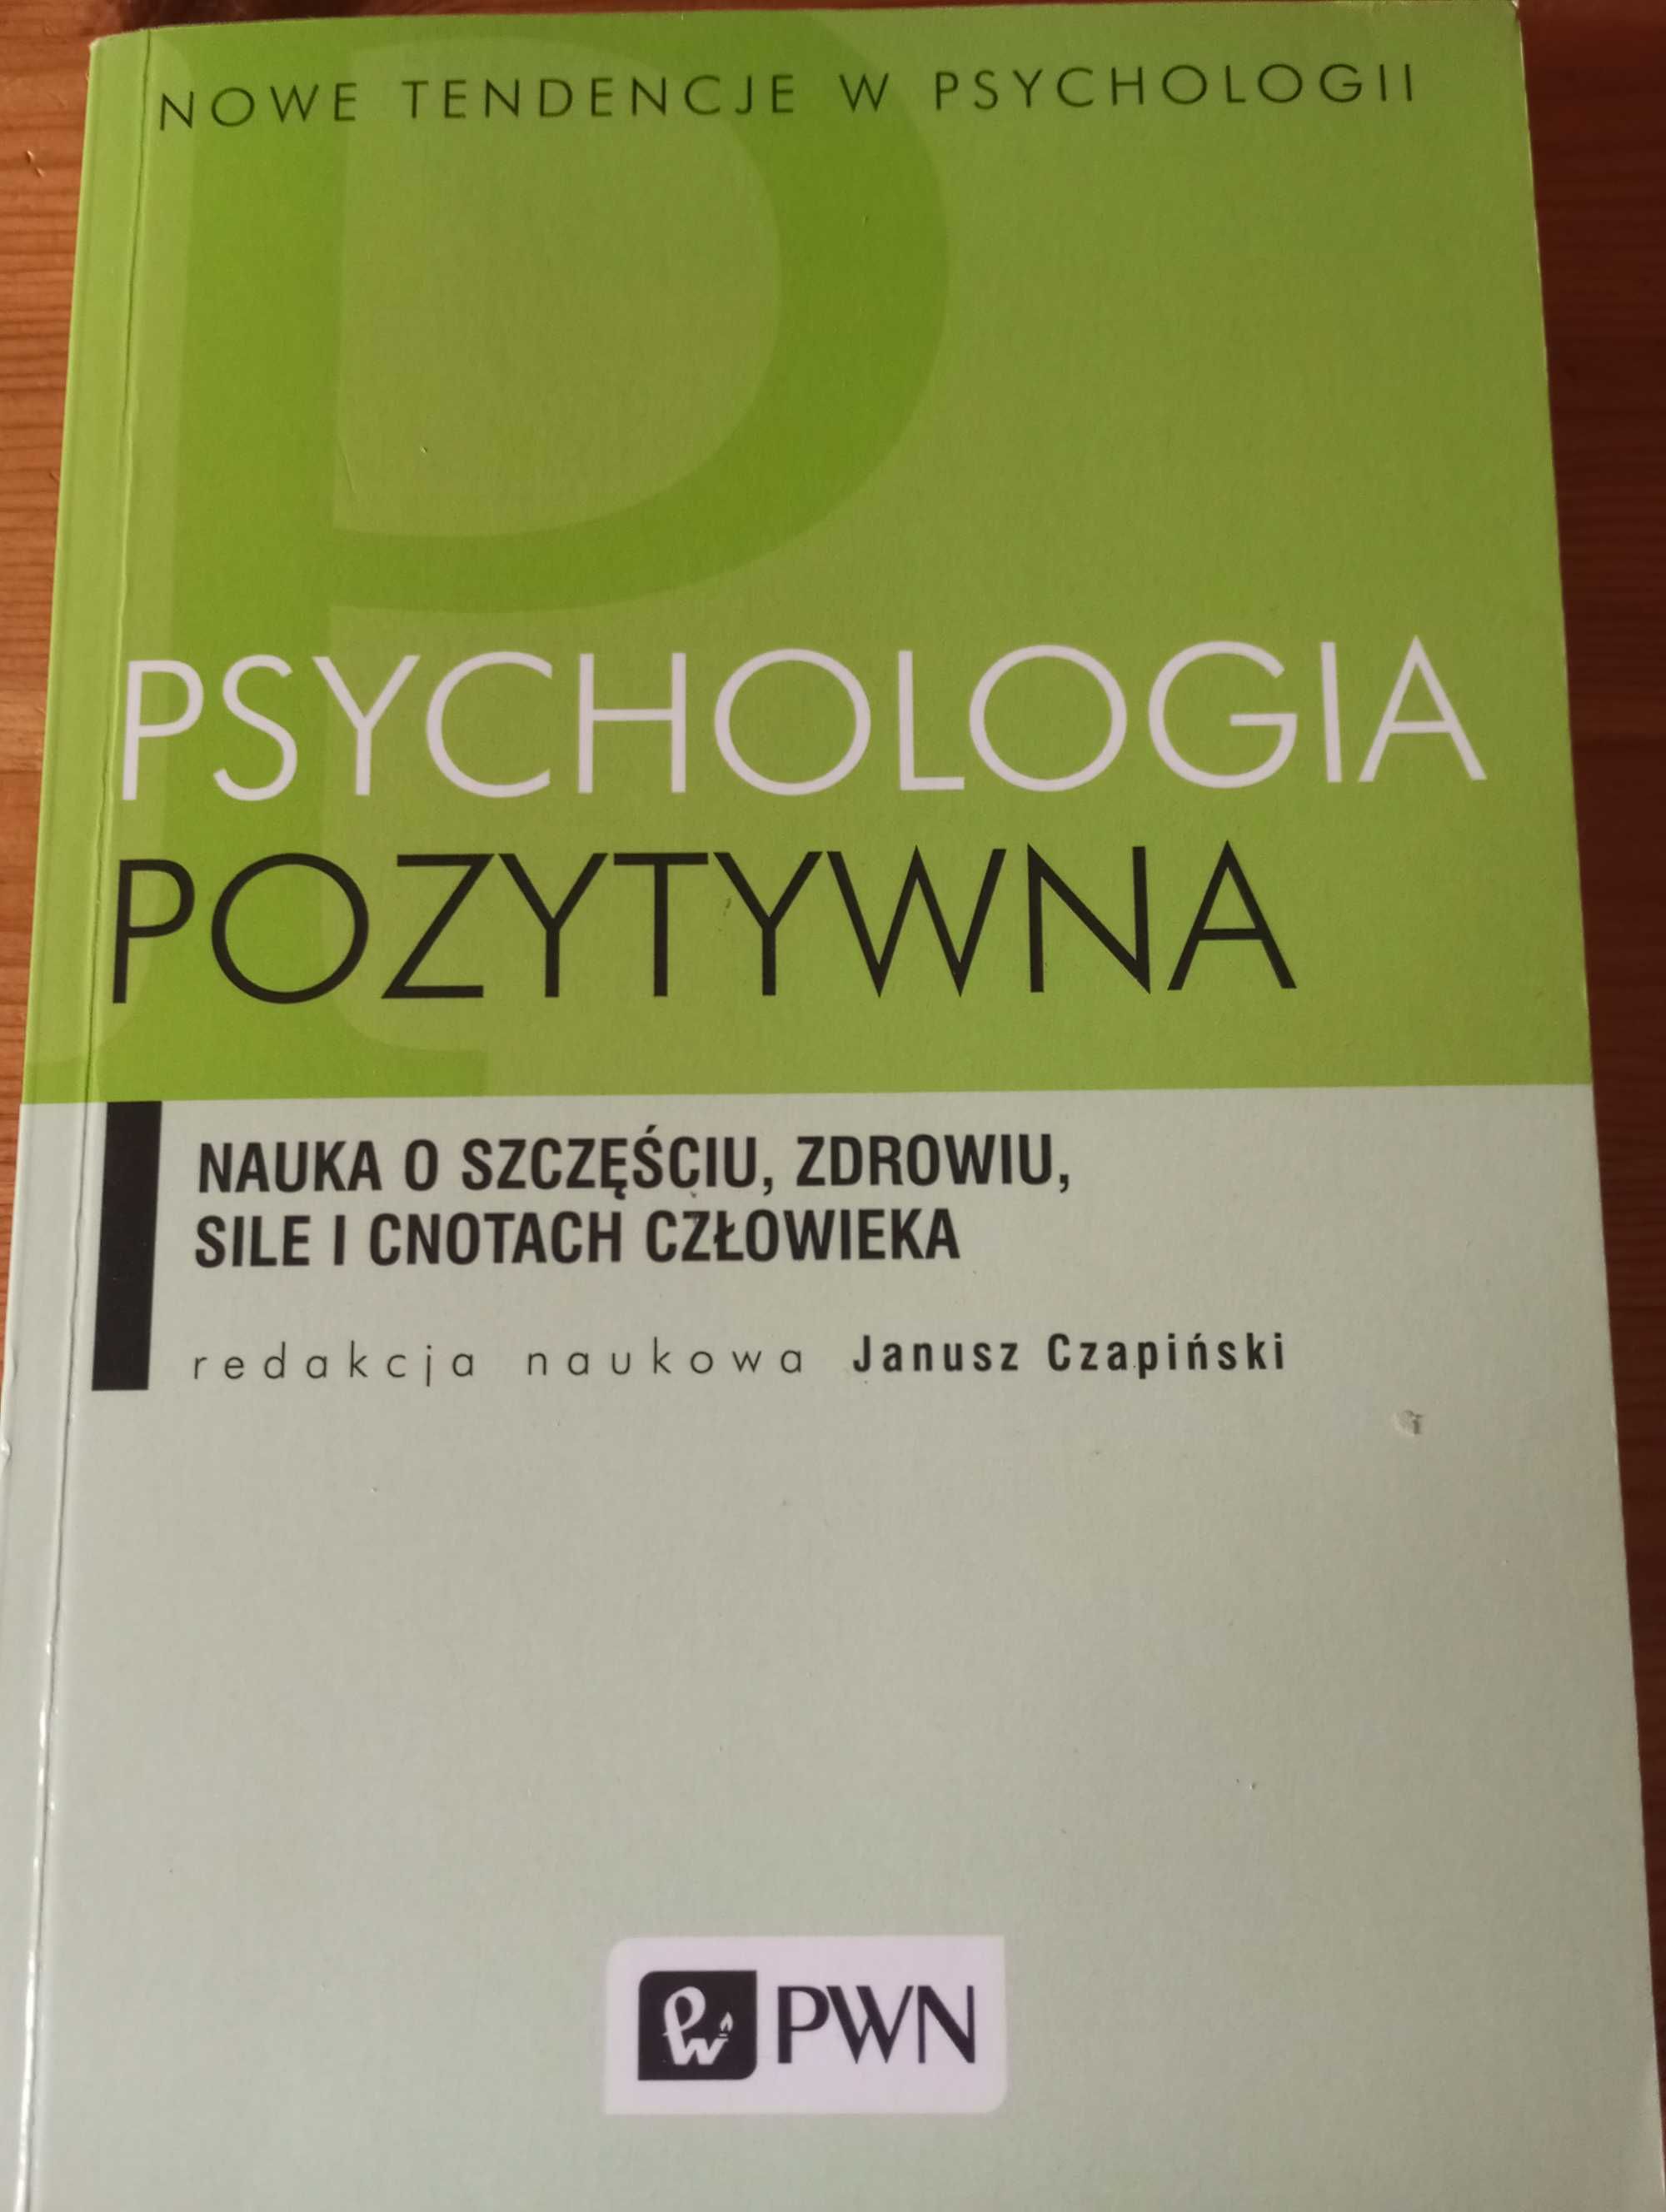 Psychologia pozytywna pod redakcją Janusza Czapińskiego